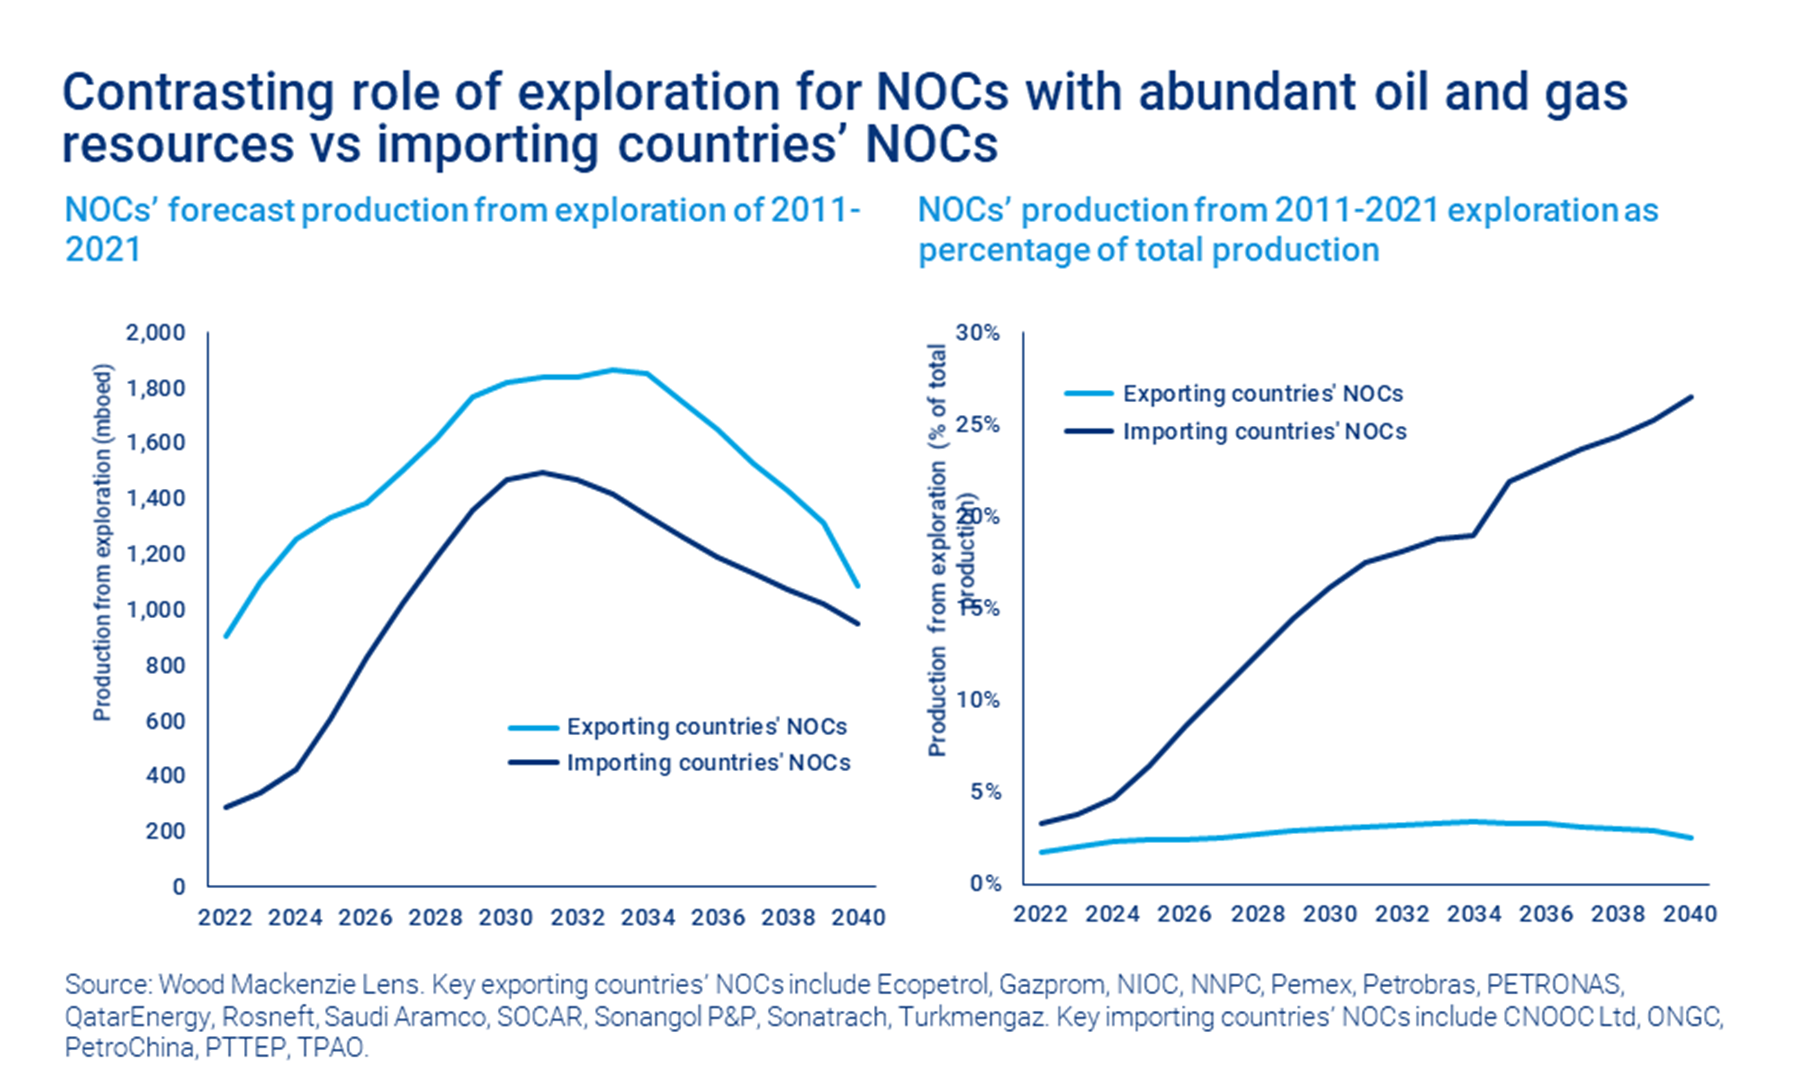 El gráfico muestra el papel contrastante de la exploración para las NOC con abundantes recursos de petróleo y gas frente a las NOC de los países importadores